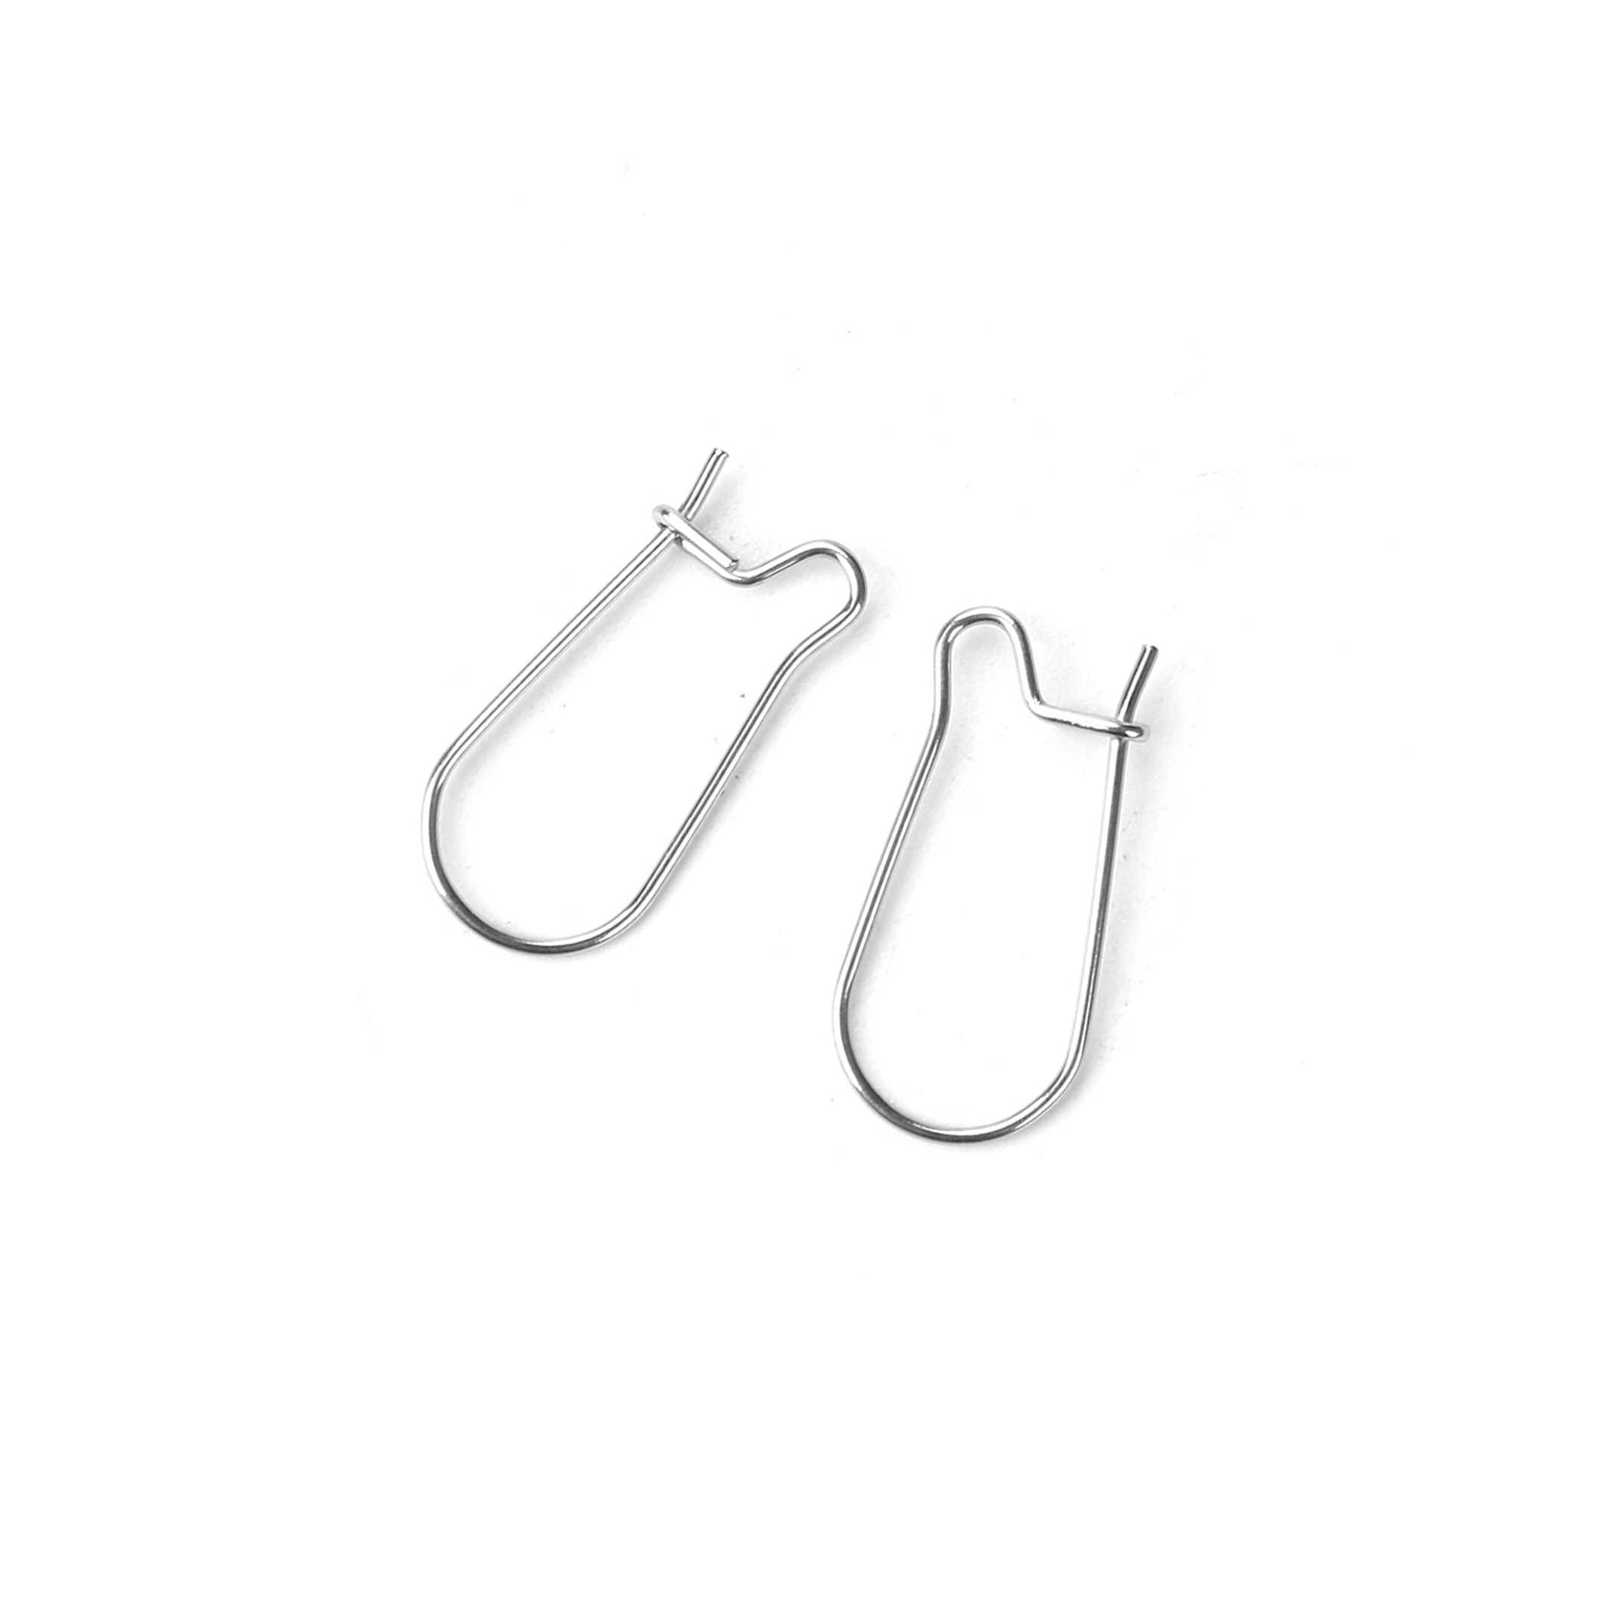 Stainless Steel Kidney Ear Wire Hooks, 48 Pack Earring Findings 3/4 Inch Long